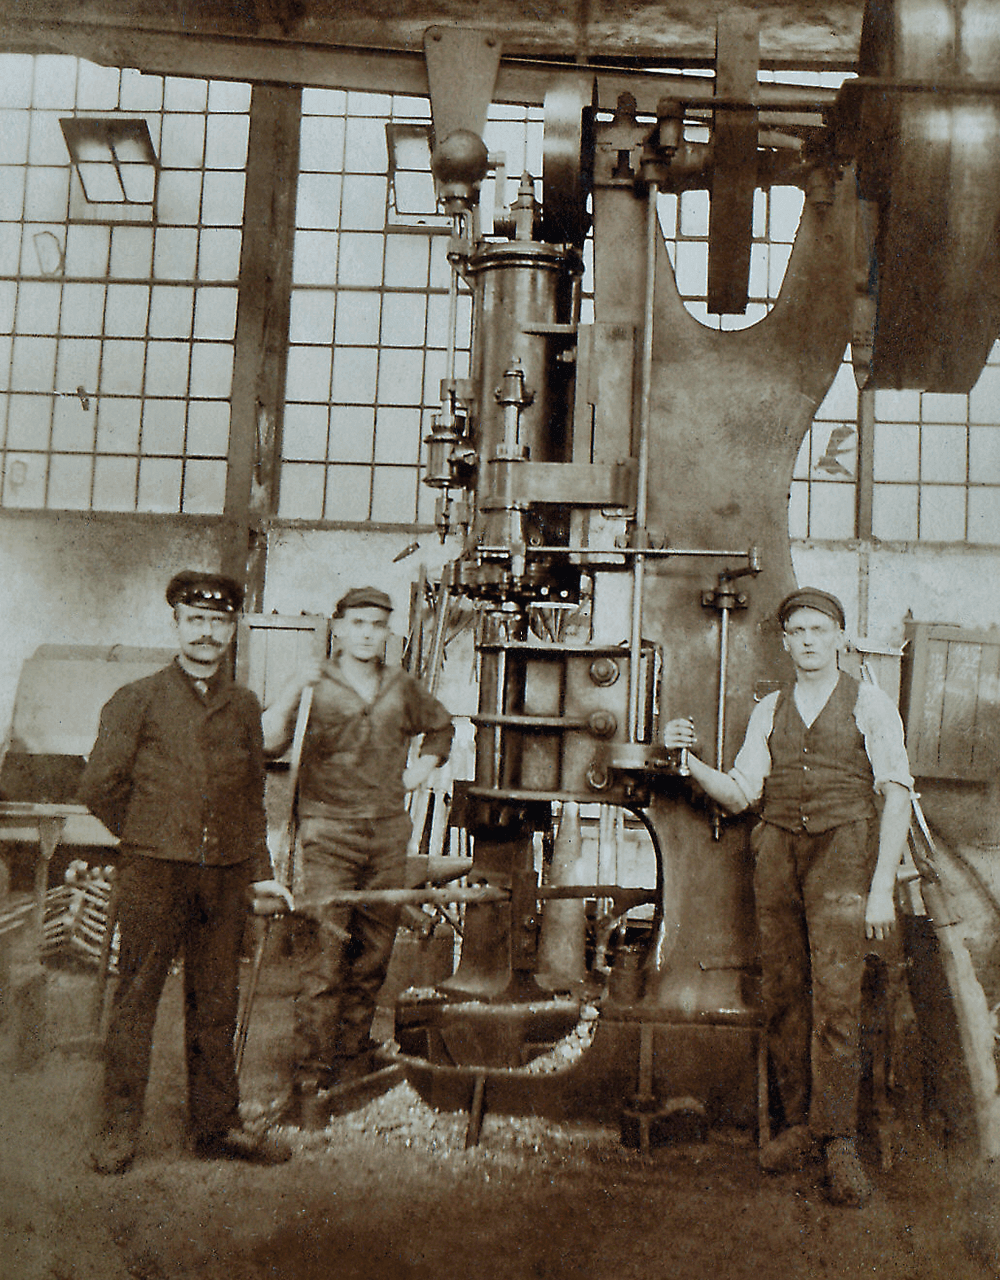 Stare zdjęcie, na którym widać trzech pracowników przed agregatem AERZEN.